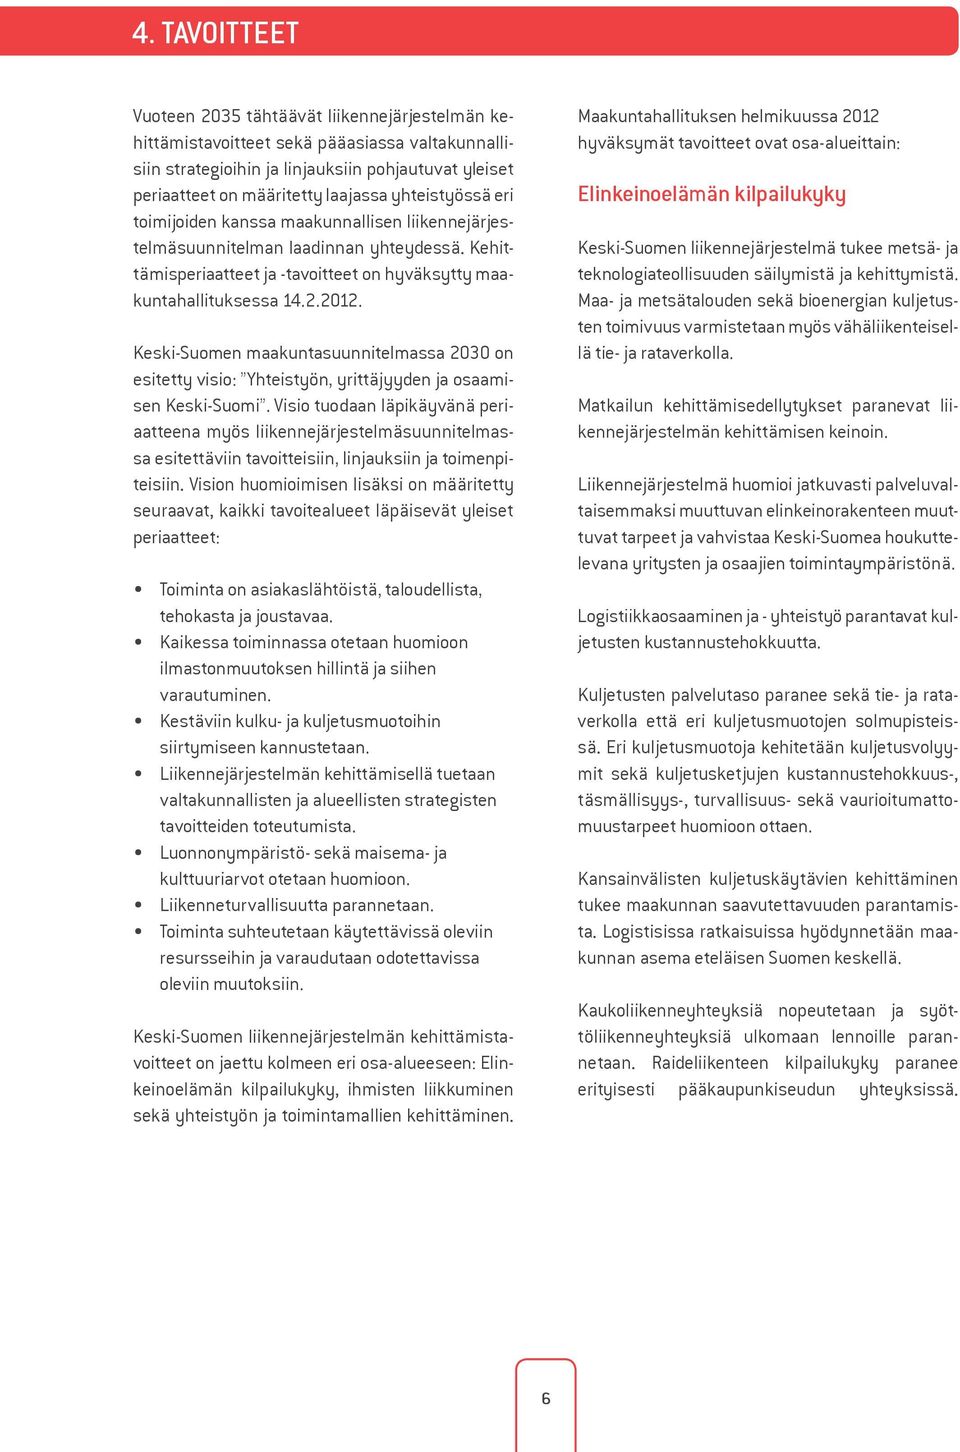 Keski-Suomen maakuntasuunnitelmassa 2030 on esitetty visio: Yhteistyön, yrittäjyyden ja osaamisen Keski-Suomi.